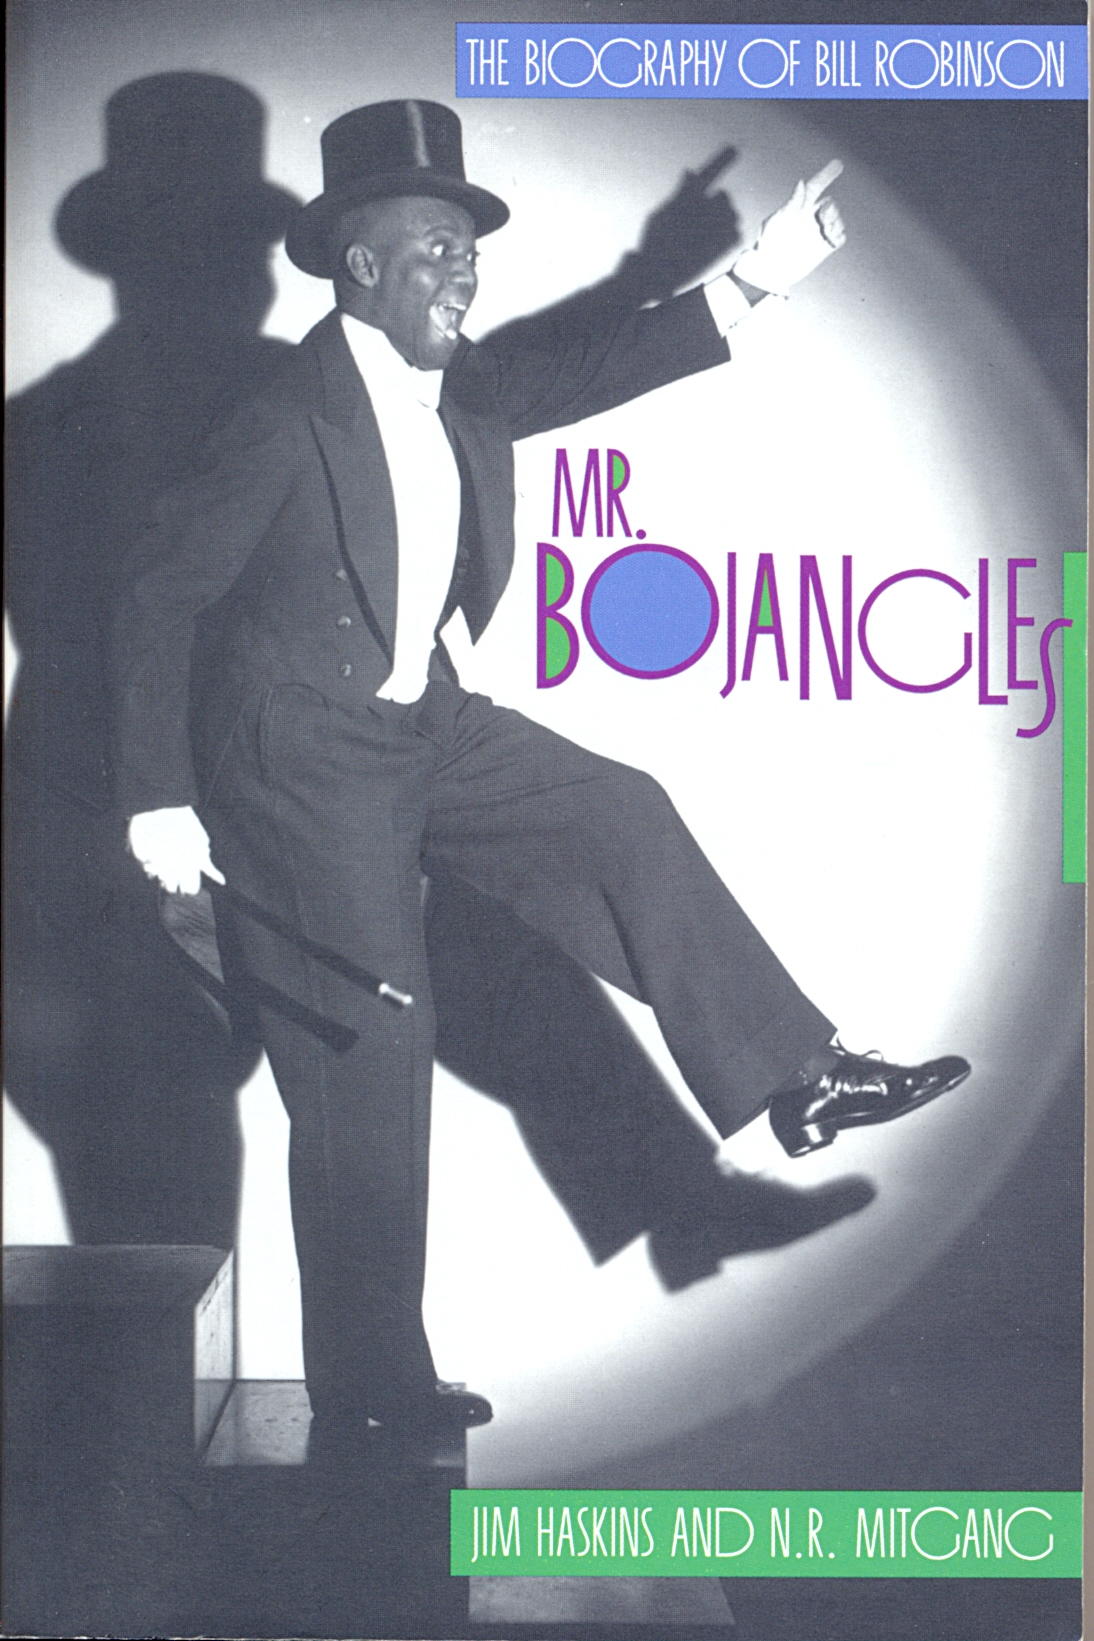 Image Mr. Bojangles